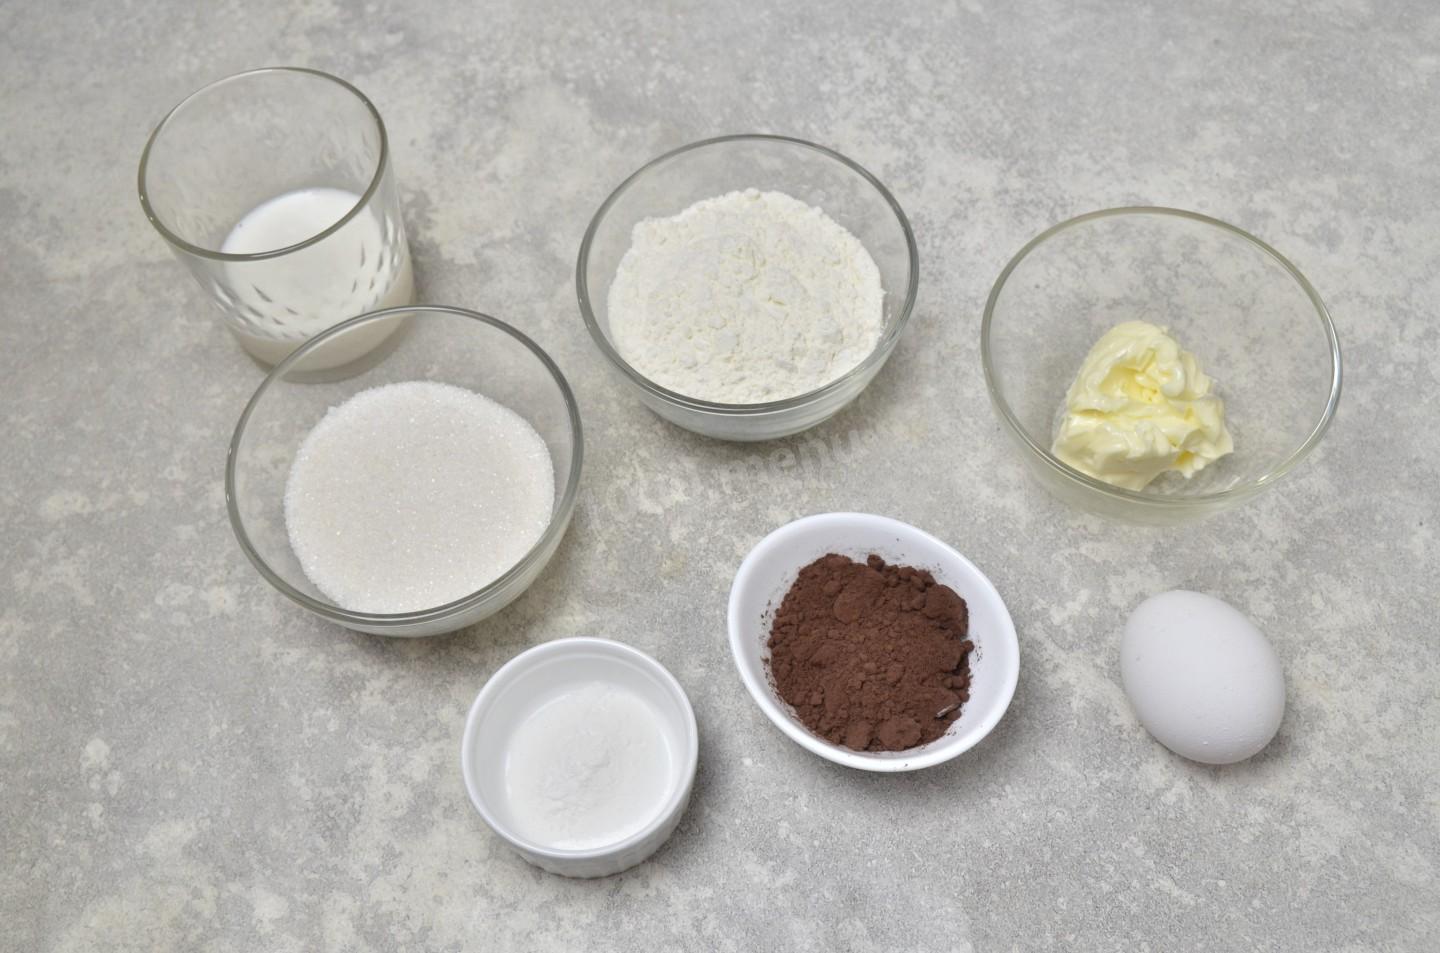 Крем молоко яйцо сахар масло мука. Как сделать шоколад с солью. Фото для рецепта соль шоколад сахар сливки 4 яйца. Рецепт для толстый стать.